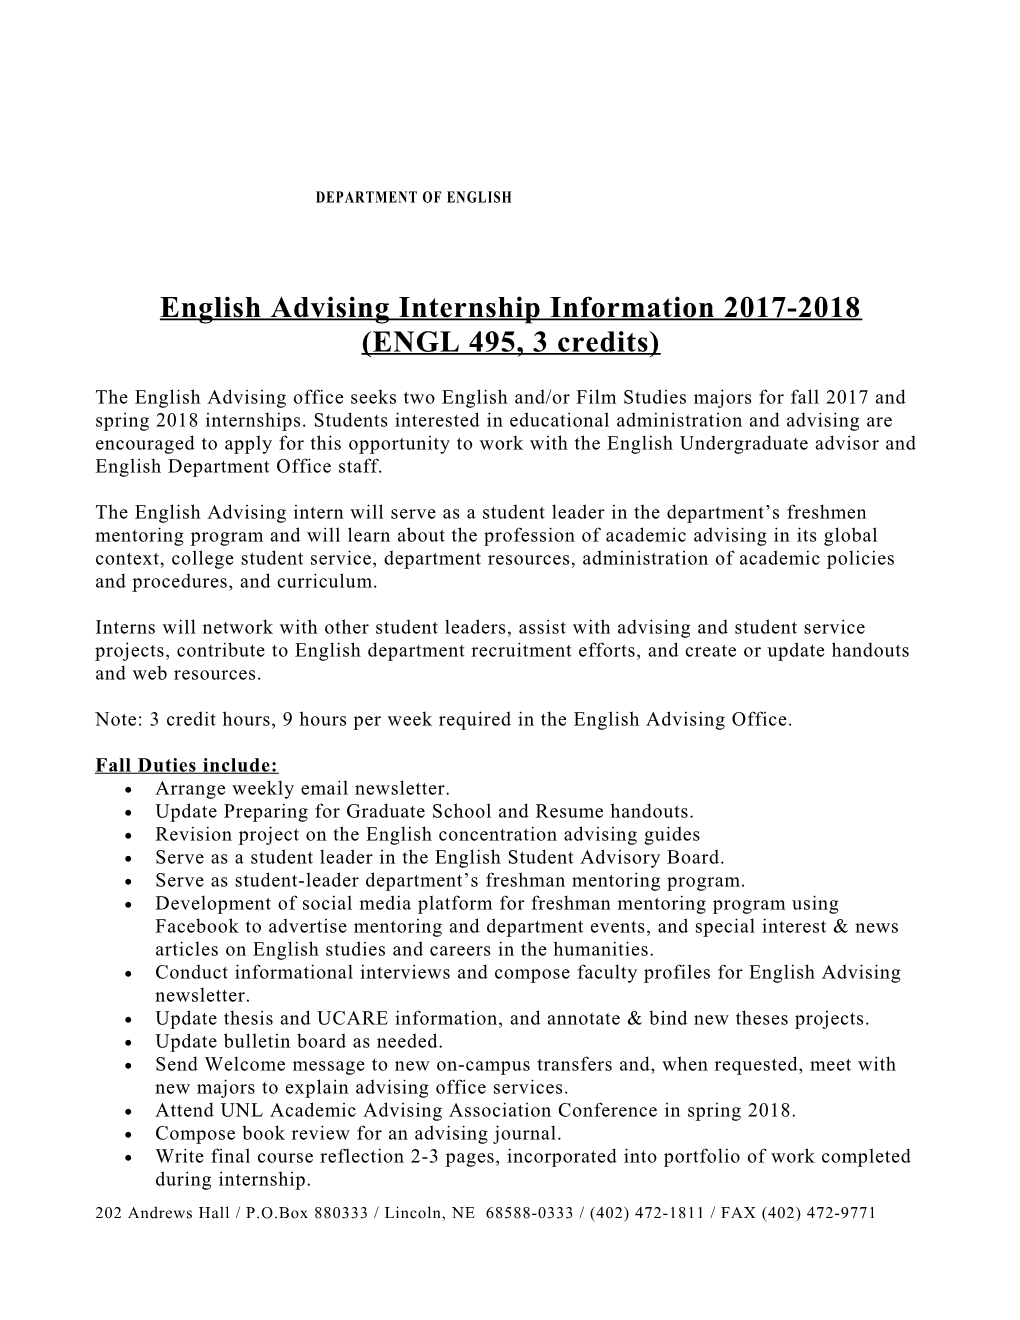 English Advising Internshipinformation 2017-2018